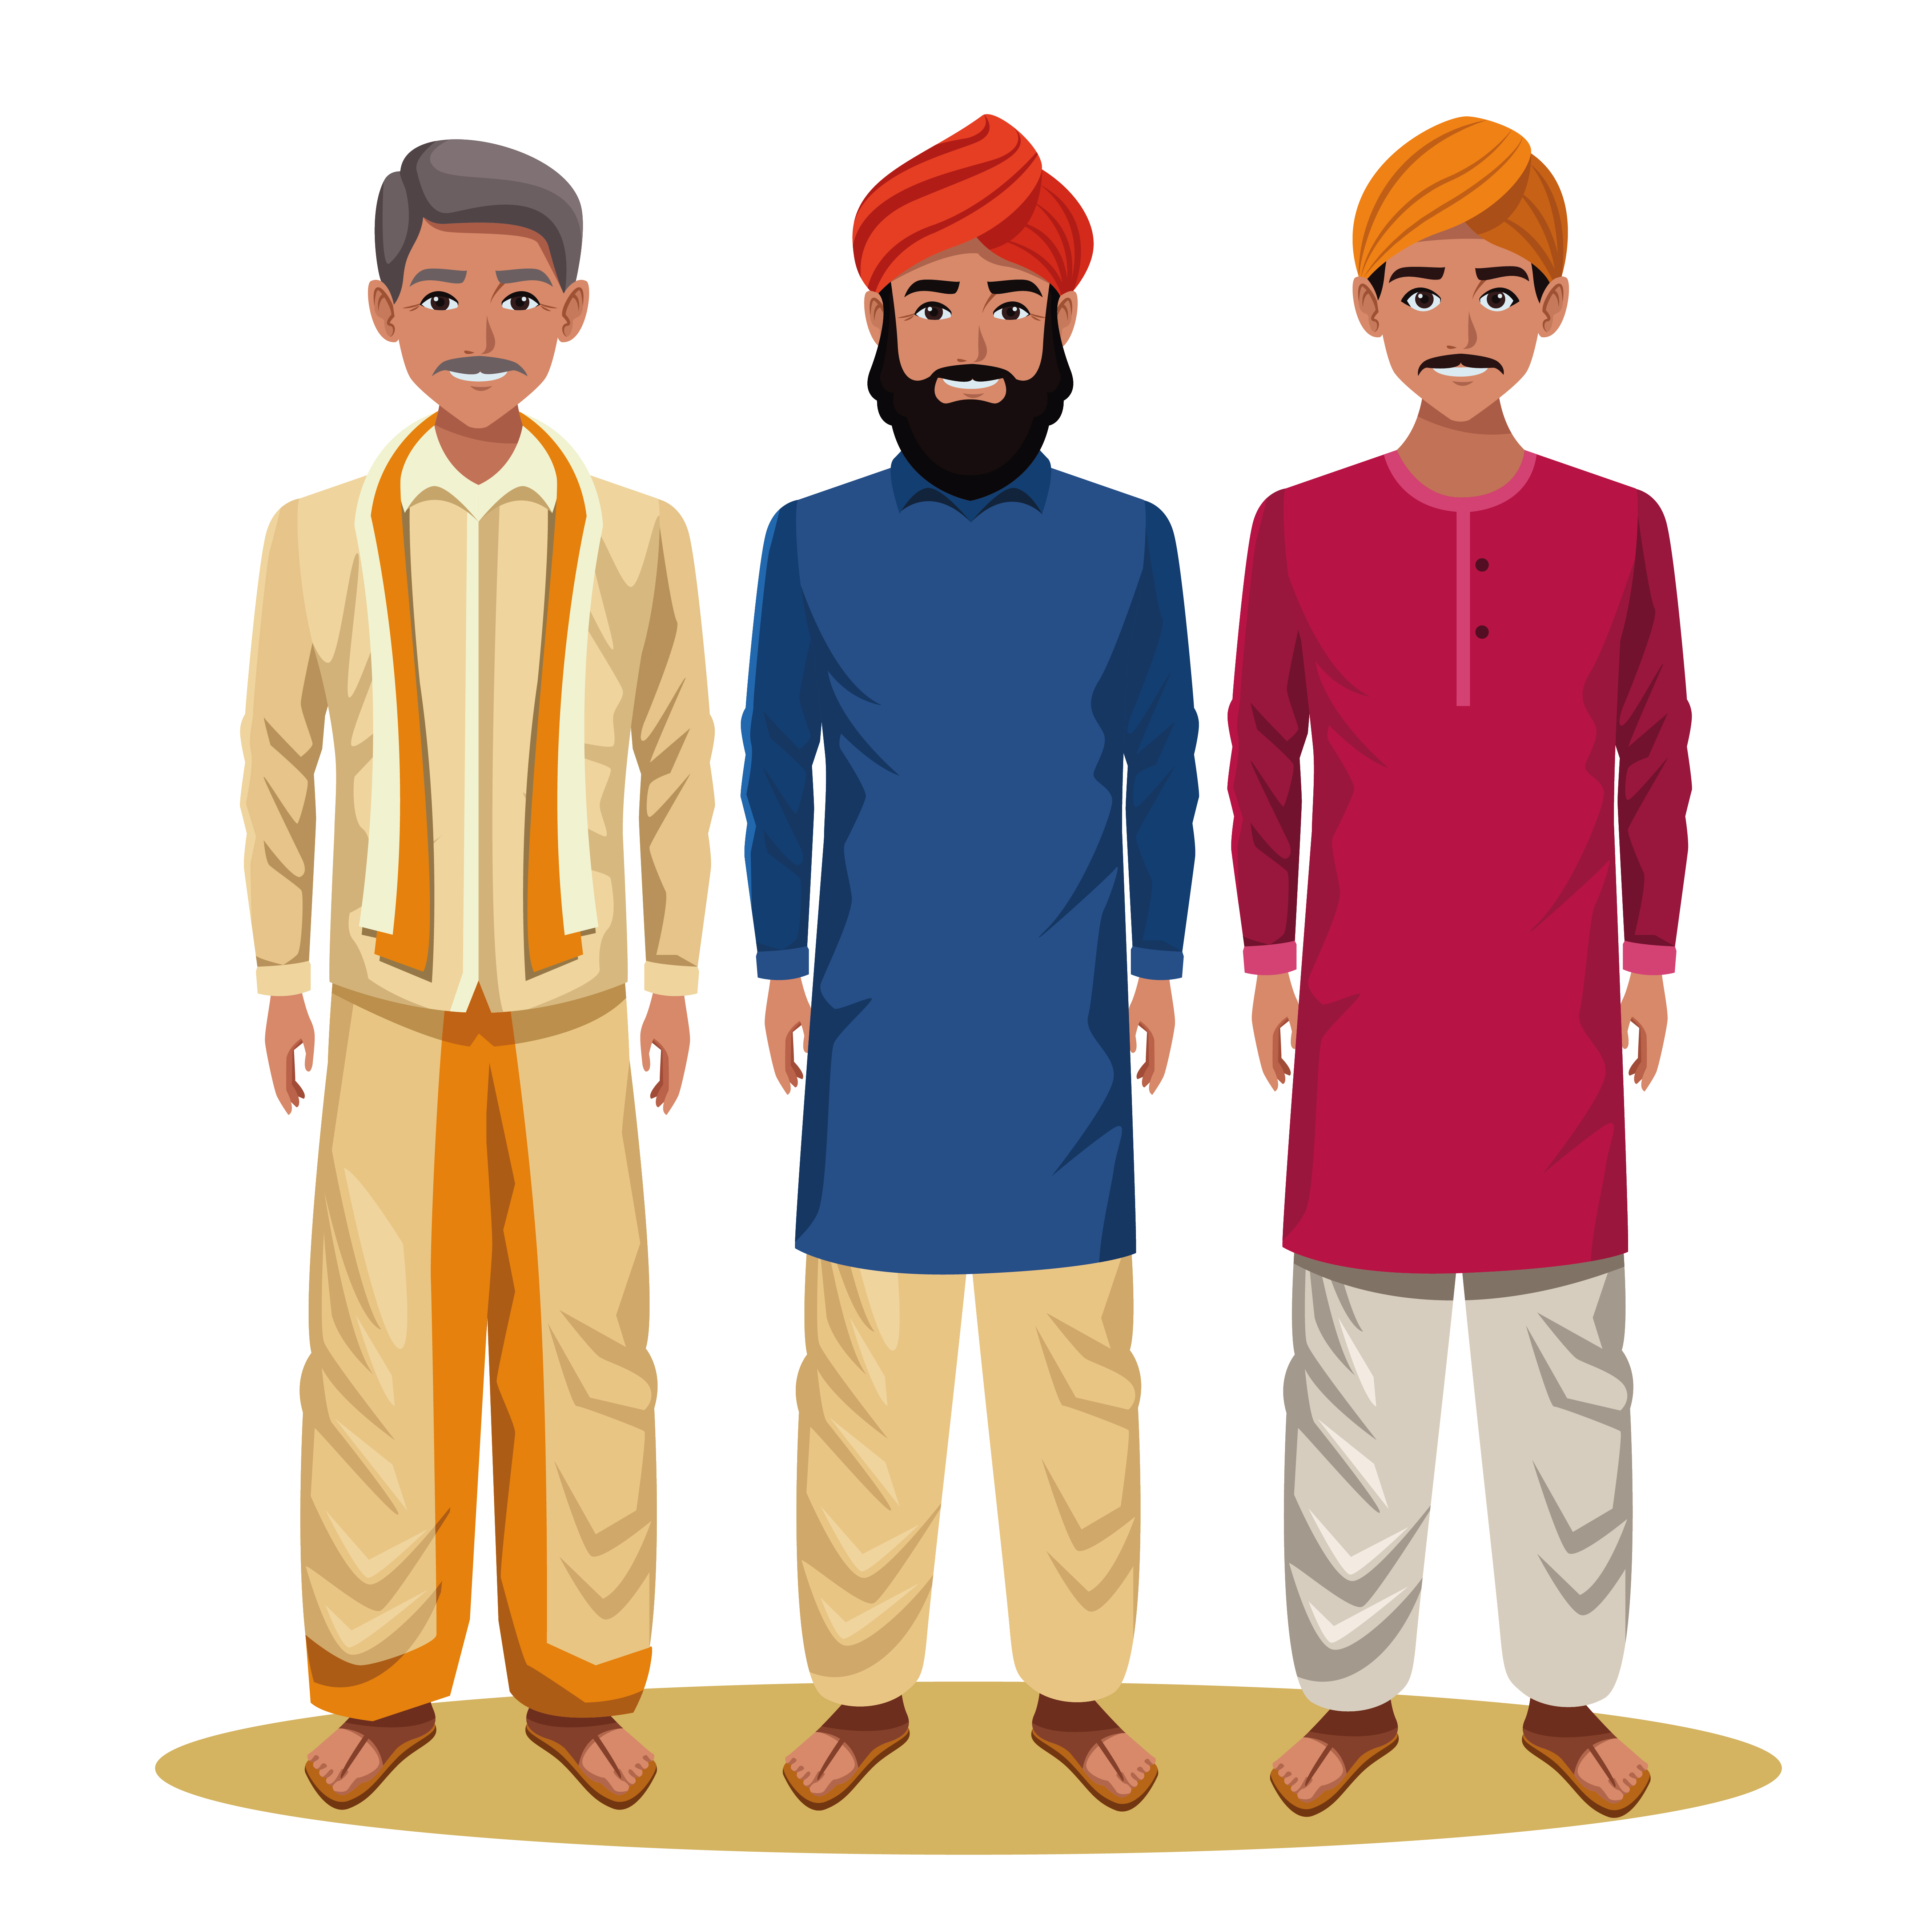 Indian men cartoon characters 1522074 Vector Art at Vecteezy